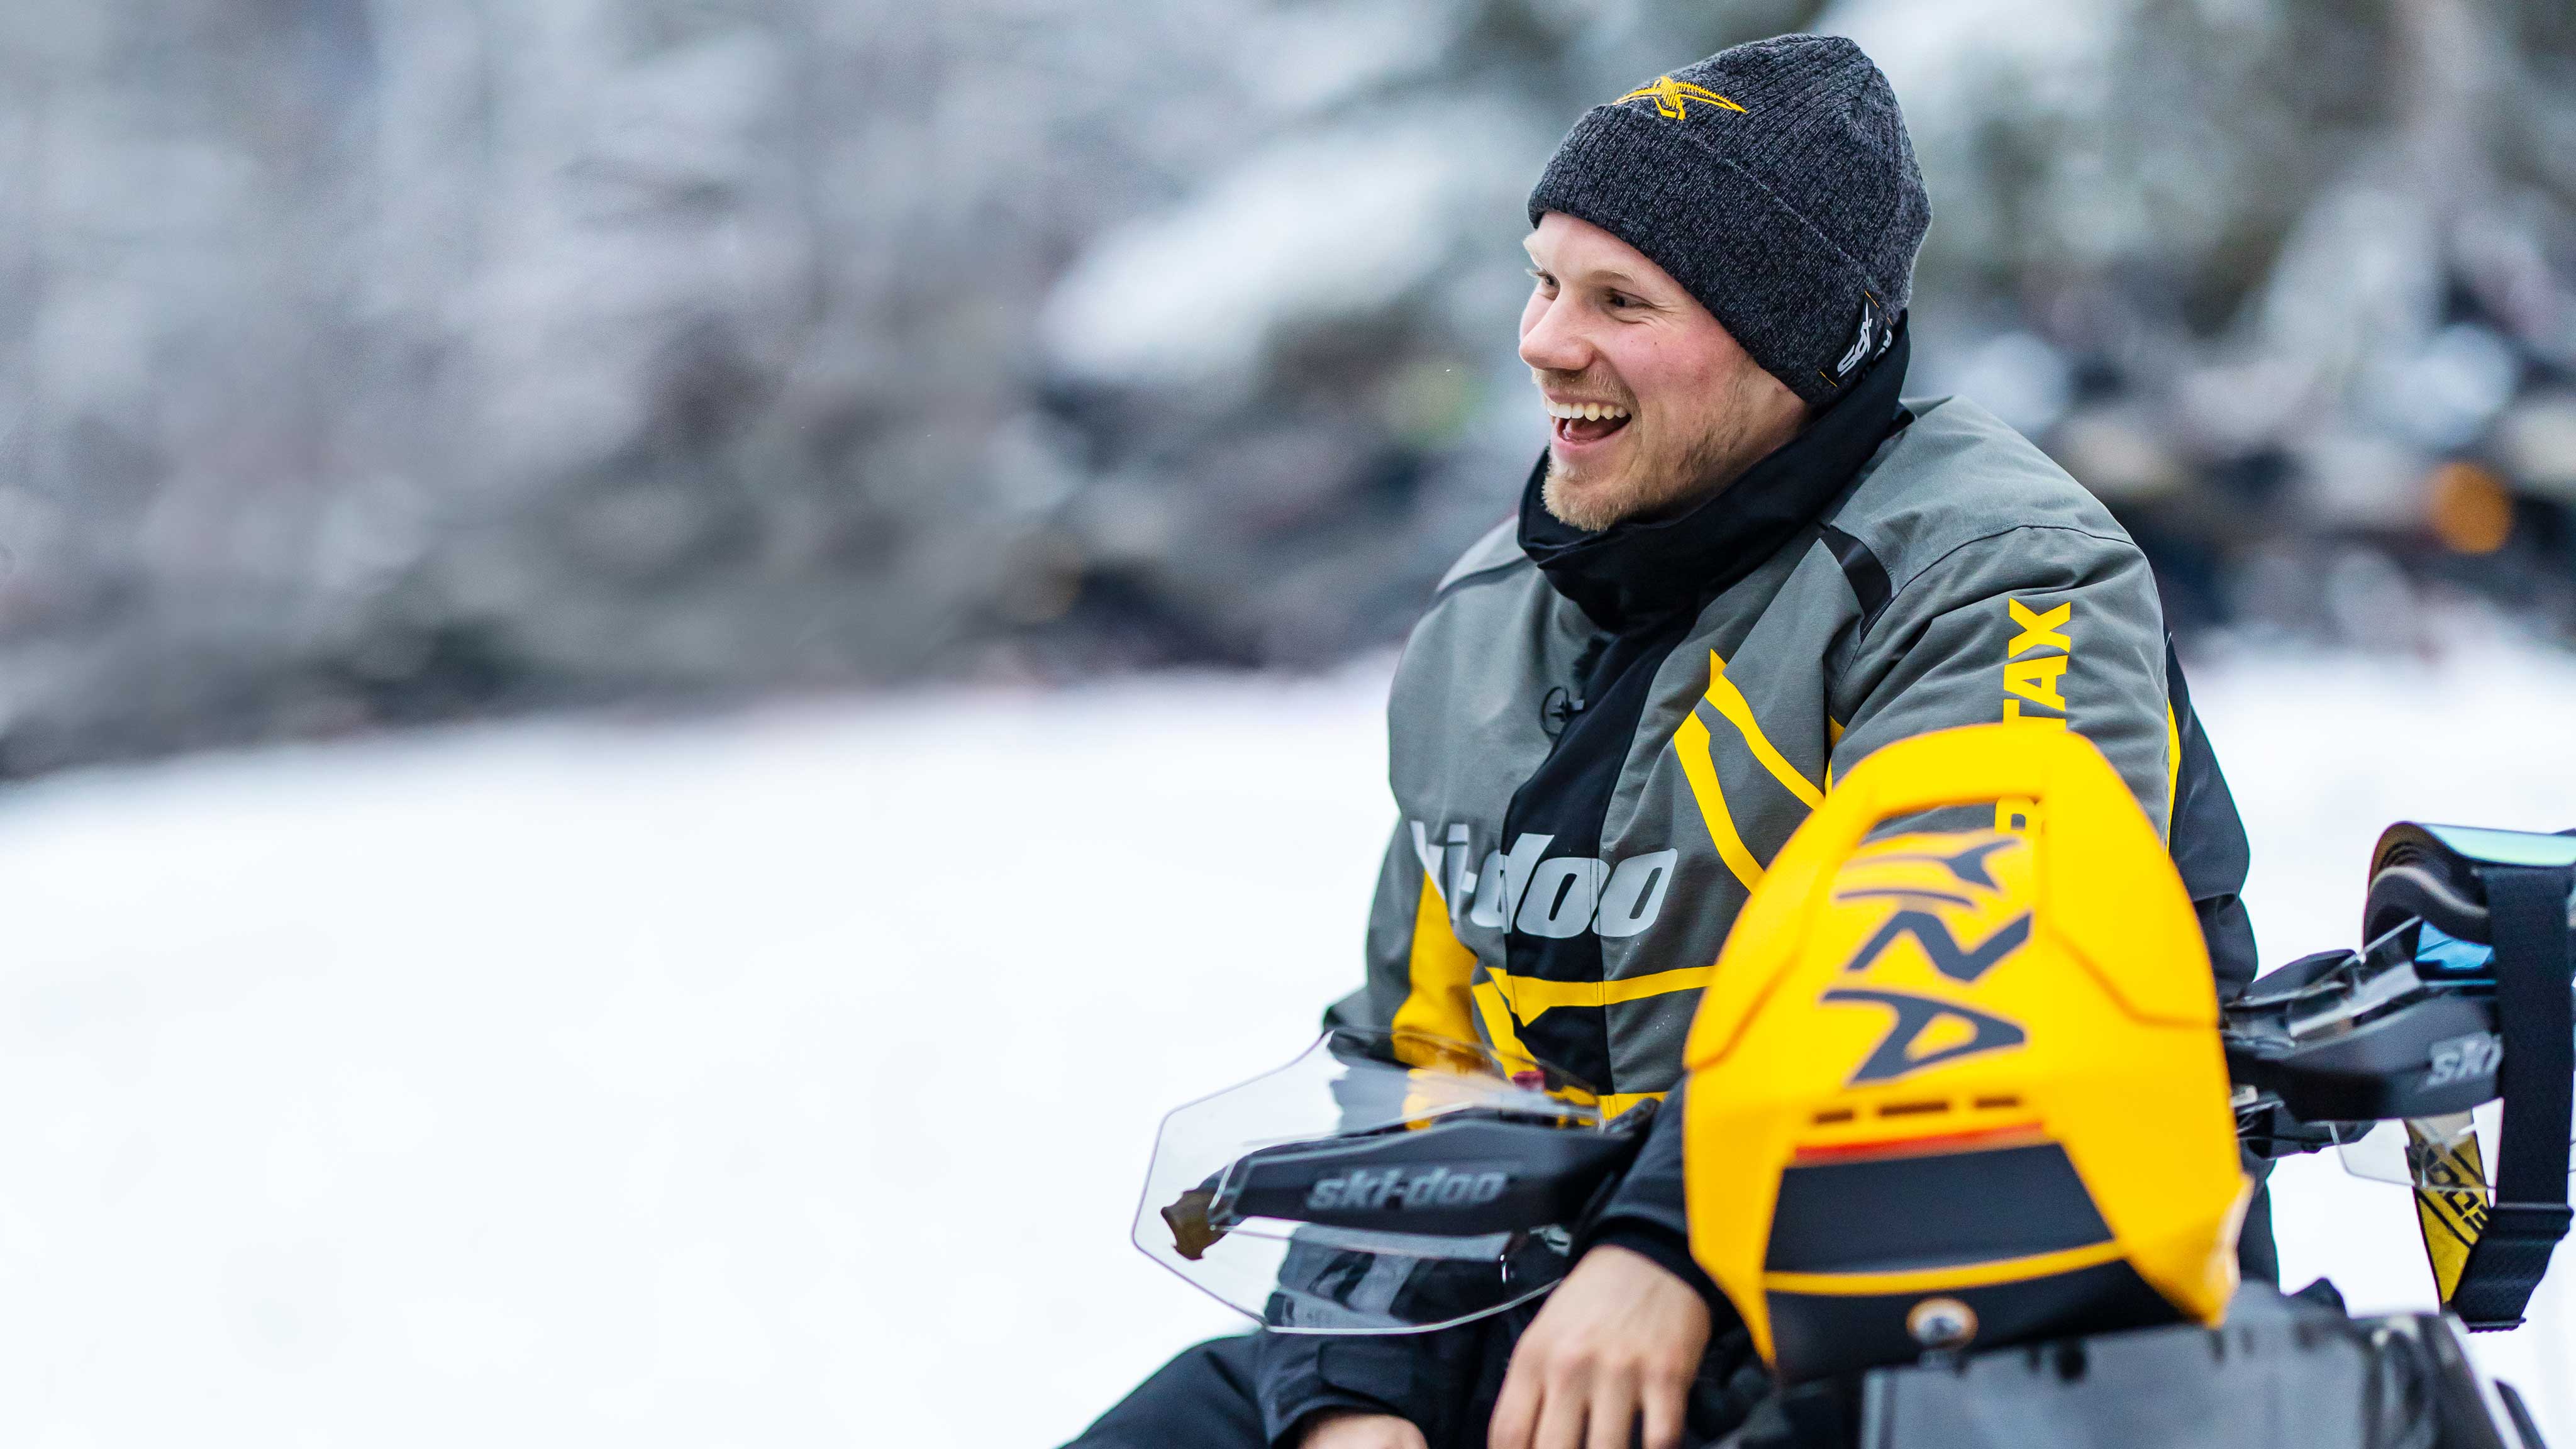 Homme assis sur sa motoneige Ski-Doo et portant le manteau X-Team